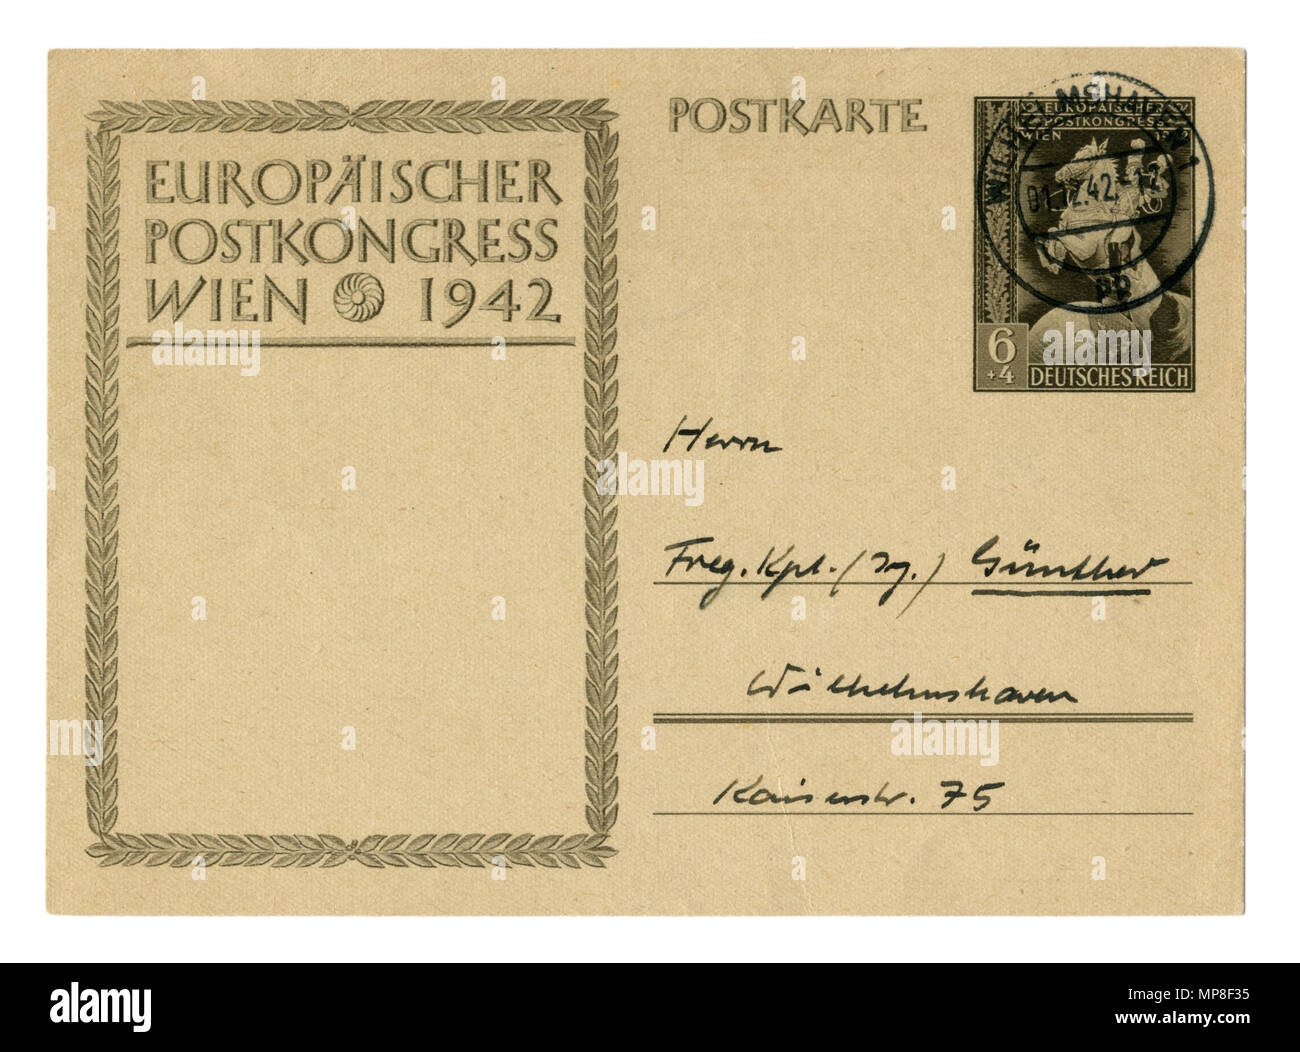 Alte Deutsche Post Card/Postkarte: Europäische post-Kongress in Wien, 1942, mit Poststempel Wilhelmshaven, Deutschland, Österreich, der zweite Weltkrieg, Drittes Reich Stockfoto